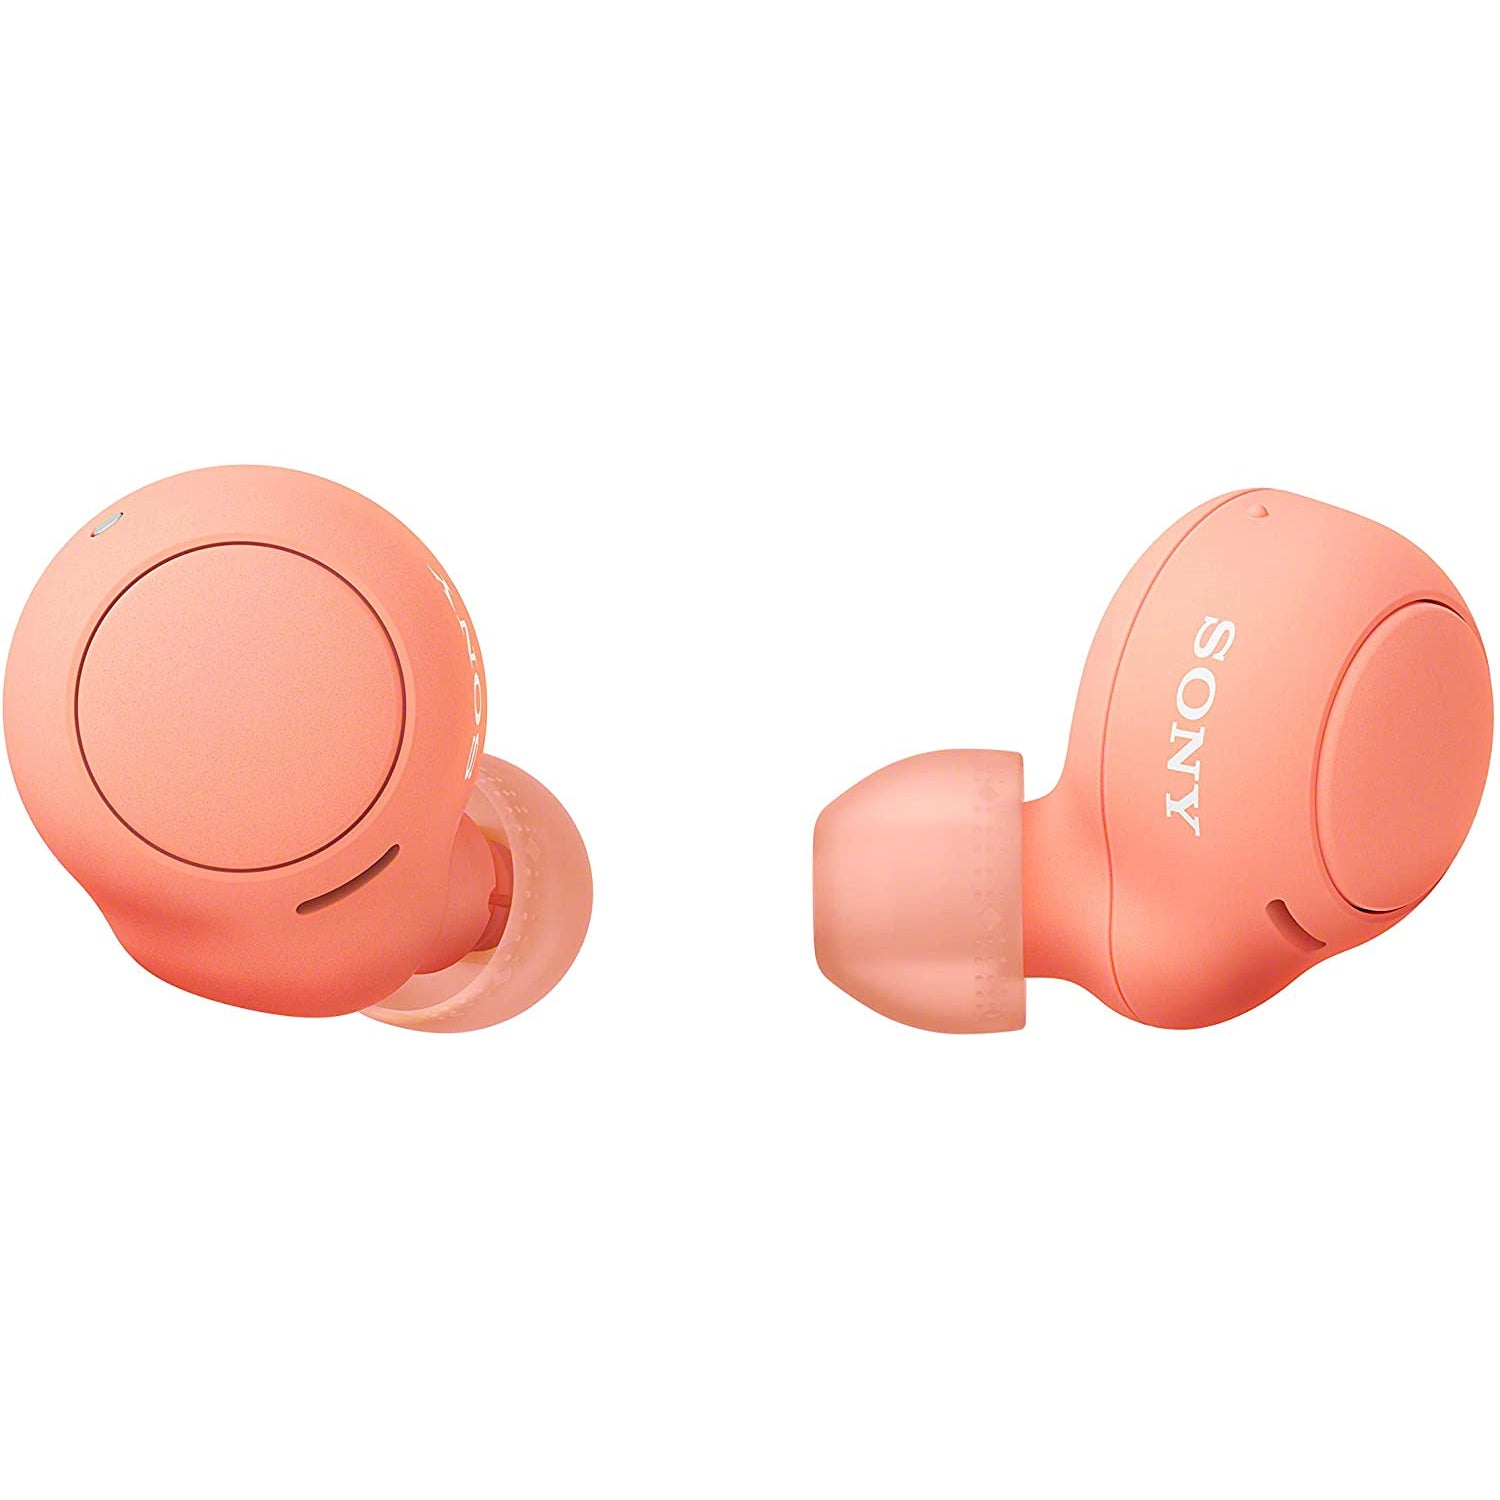 Sony WF-C500 Wireless Earbuds - Orange - Refurbished Good